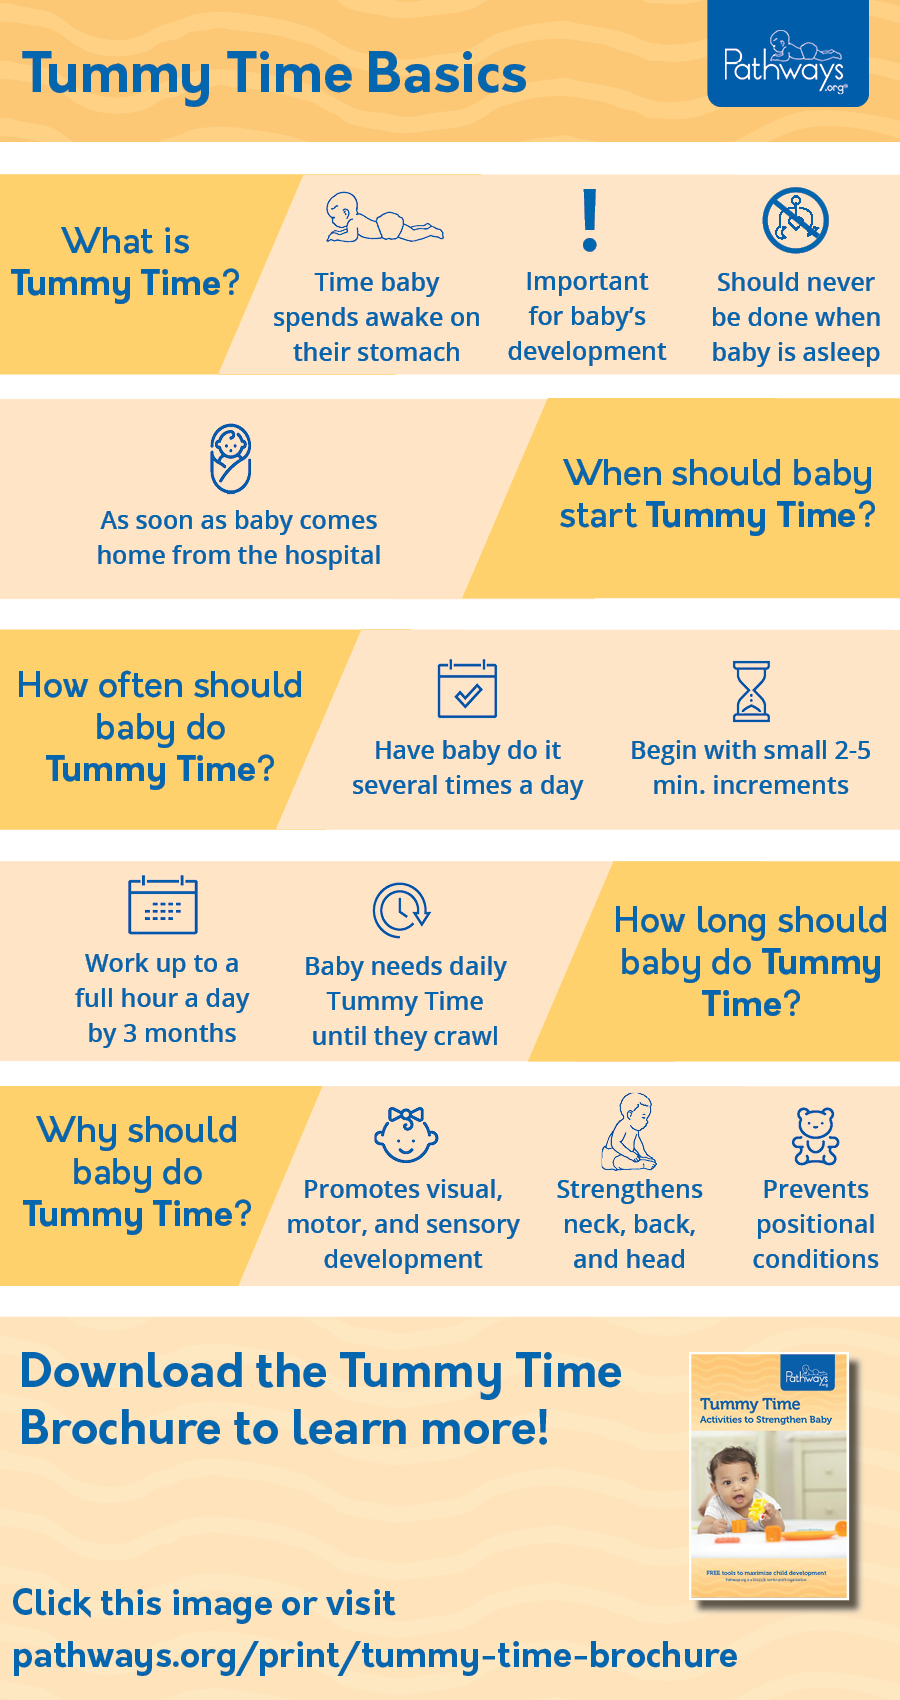 tummy_time_basics_infographic